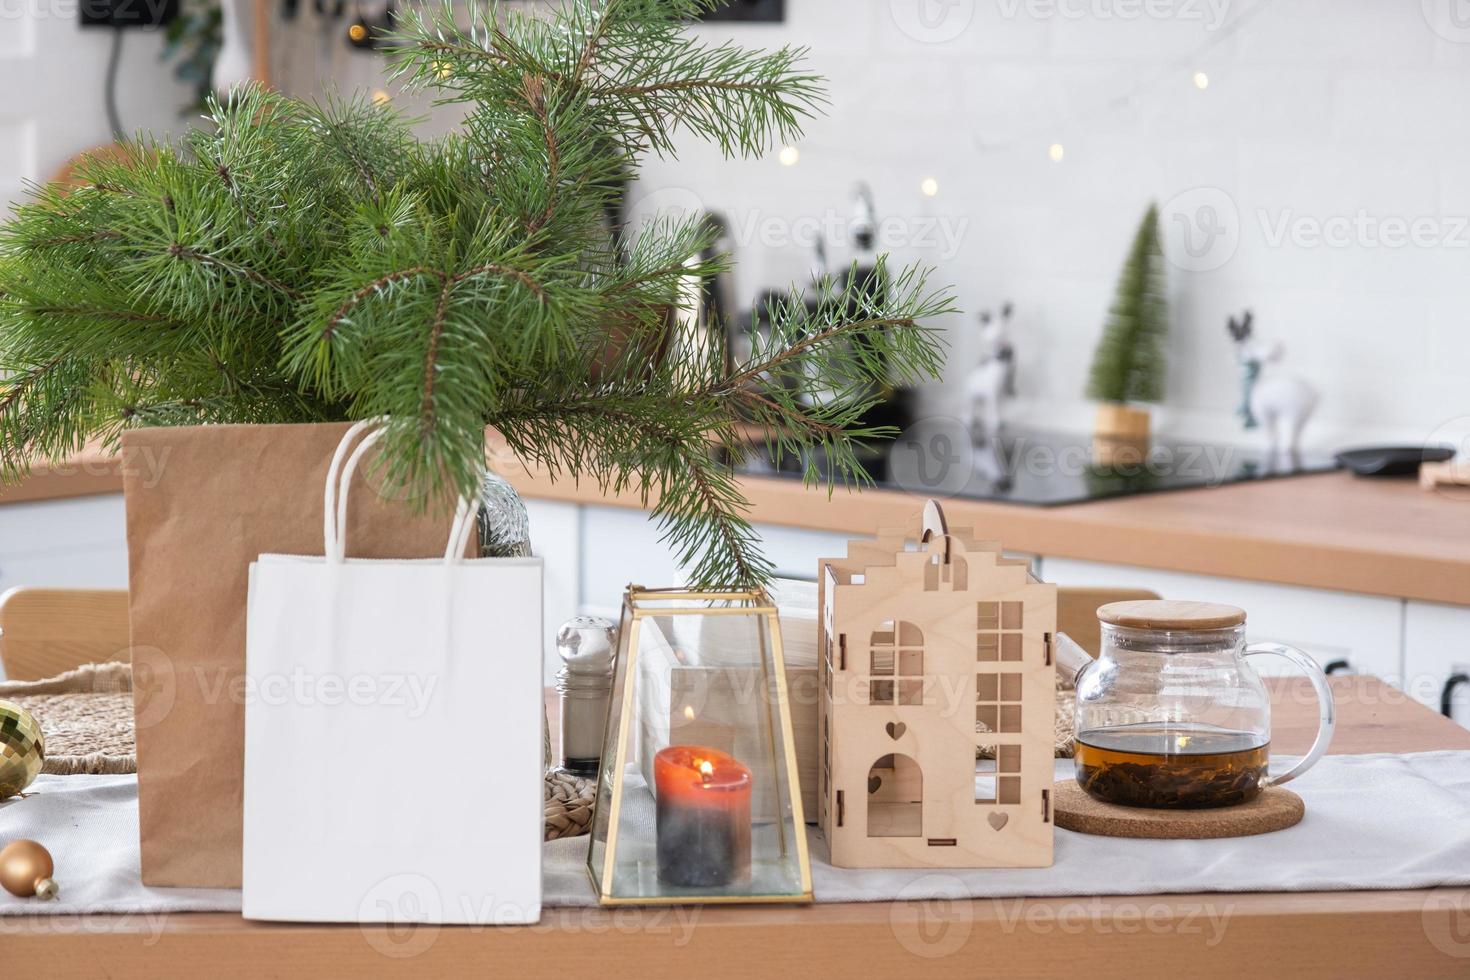 papper paket falsk upp är på kök eras tabell dekorerad för jul. handla och gåvor, närvarande och redo måltider är levereras och beredd för de ny år foto